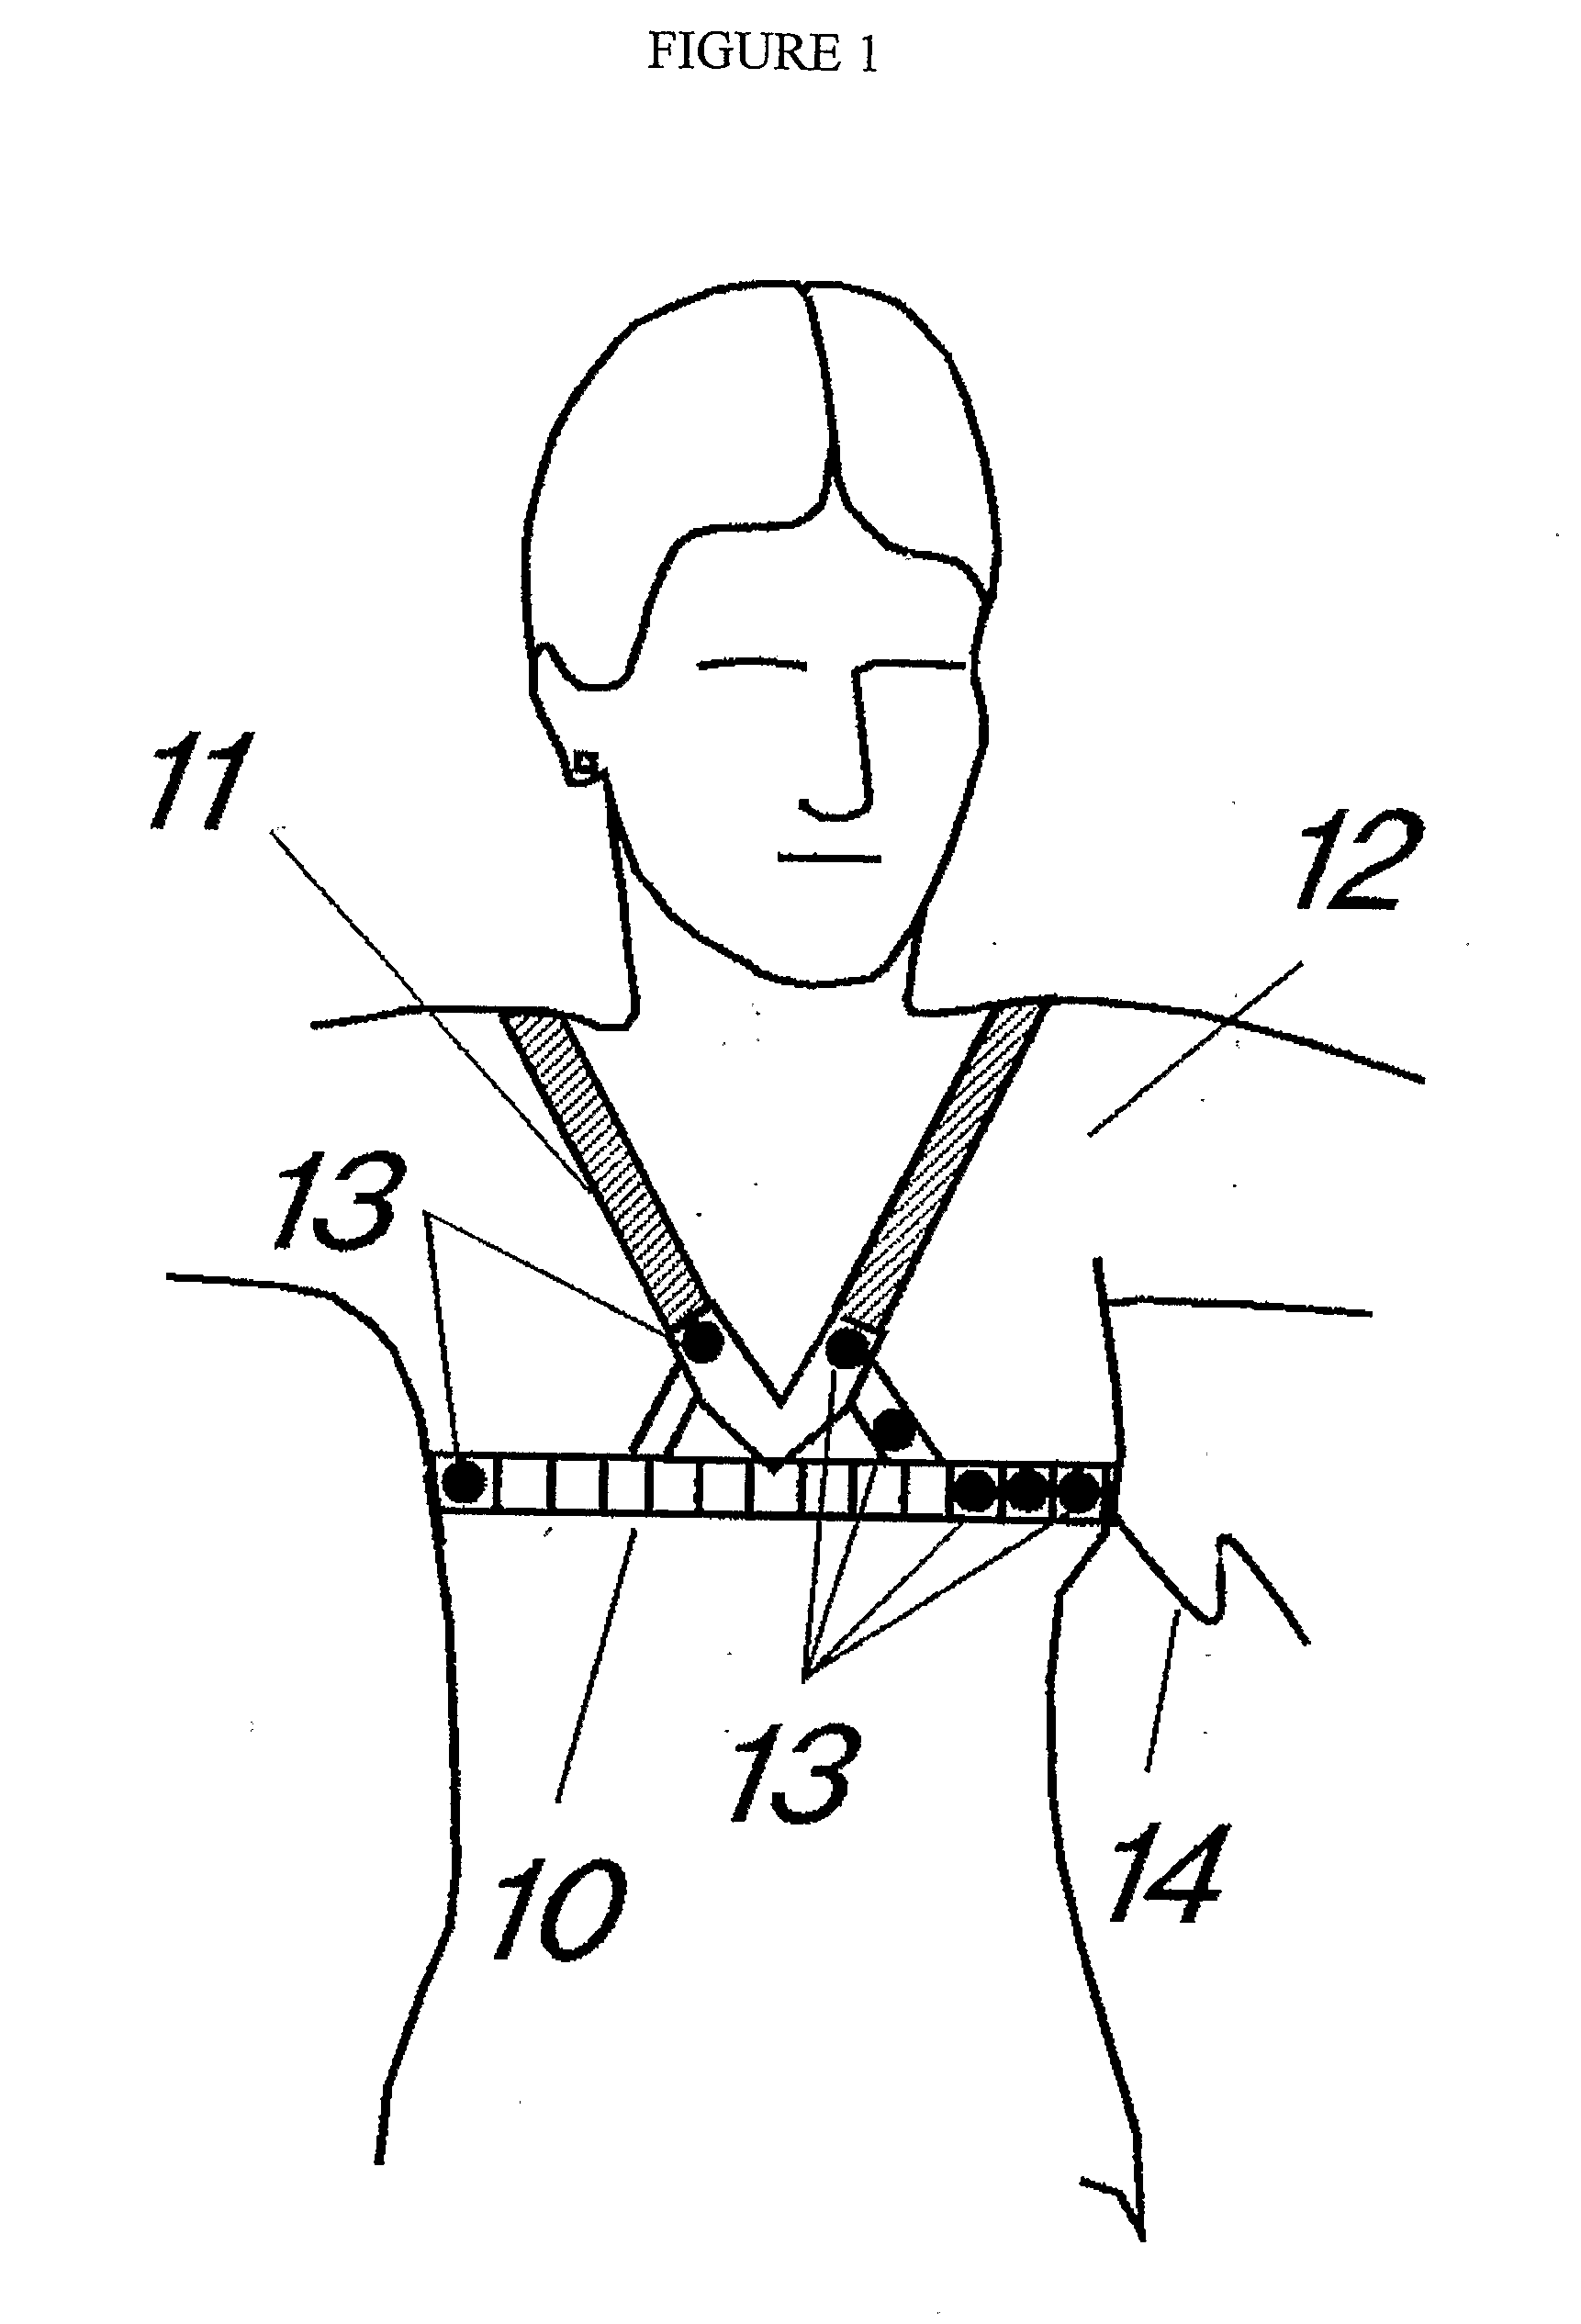 Ergometry Belt